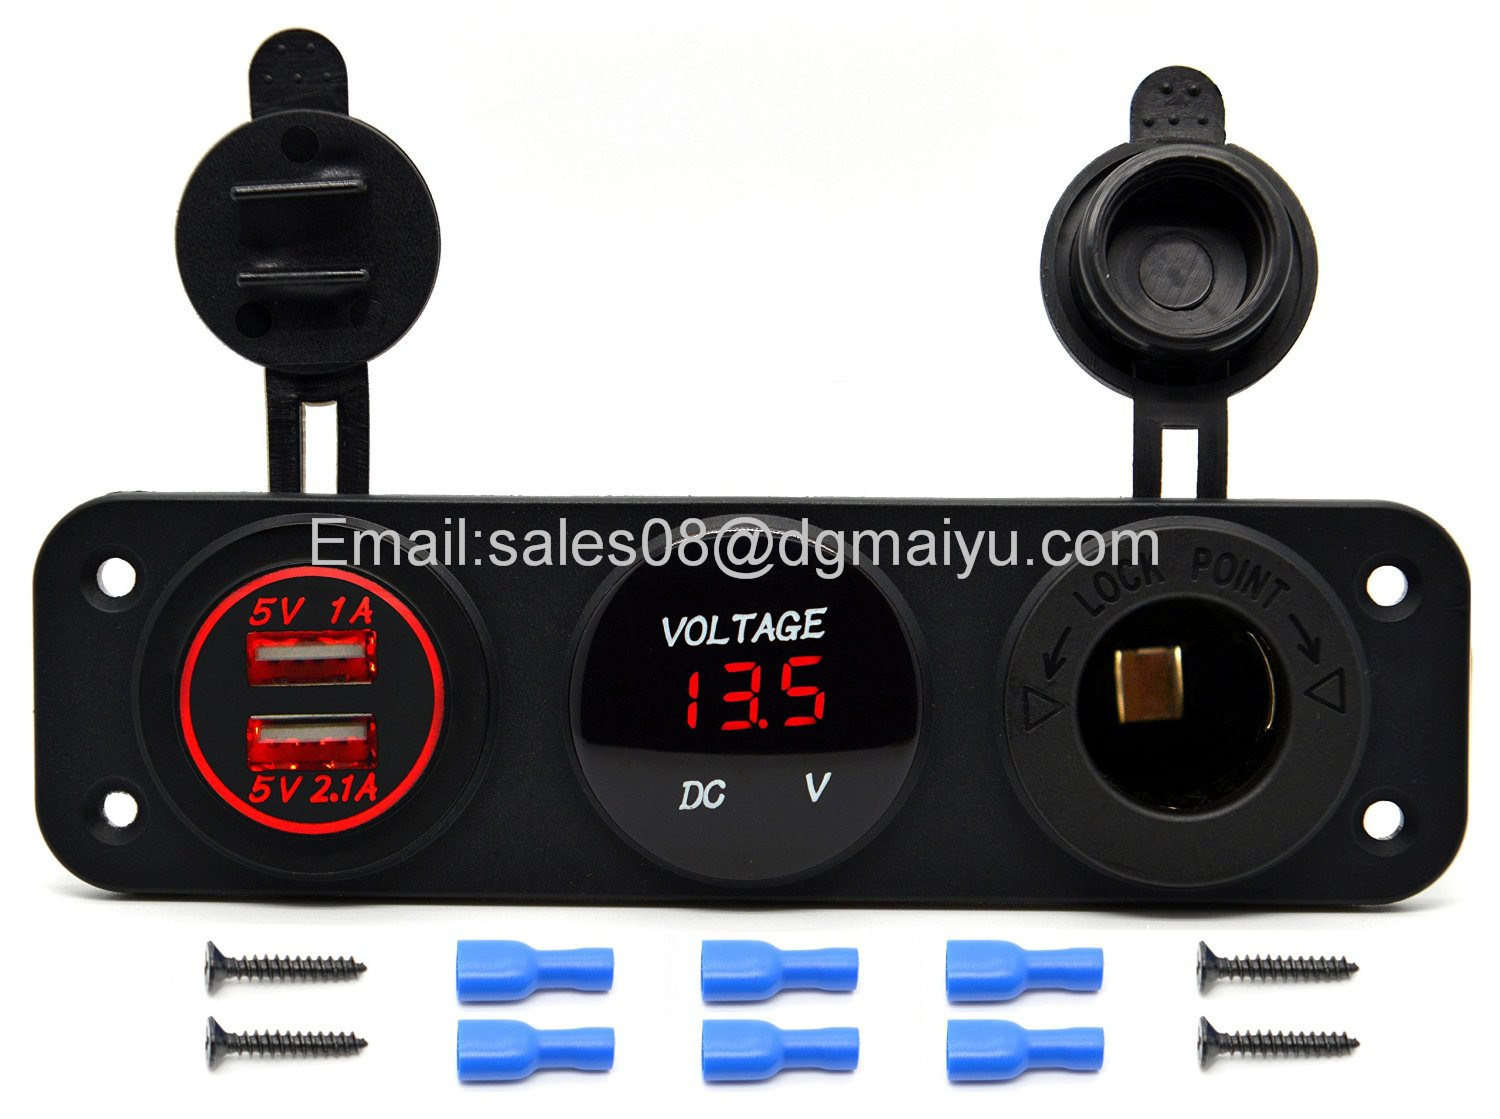 Triple Function Dual USB Charger + LED Voltmeter + 12V Outlet Power Socket Panel Jack for Car Boat Marine Digital Devices Mobile Phone Tablet (Blue LED)